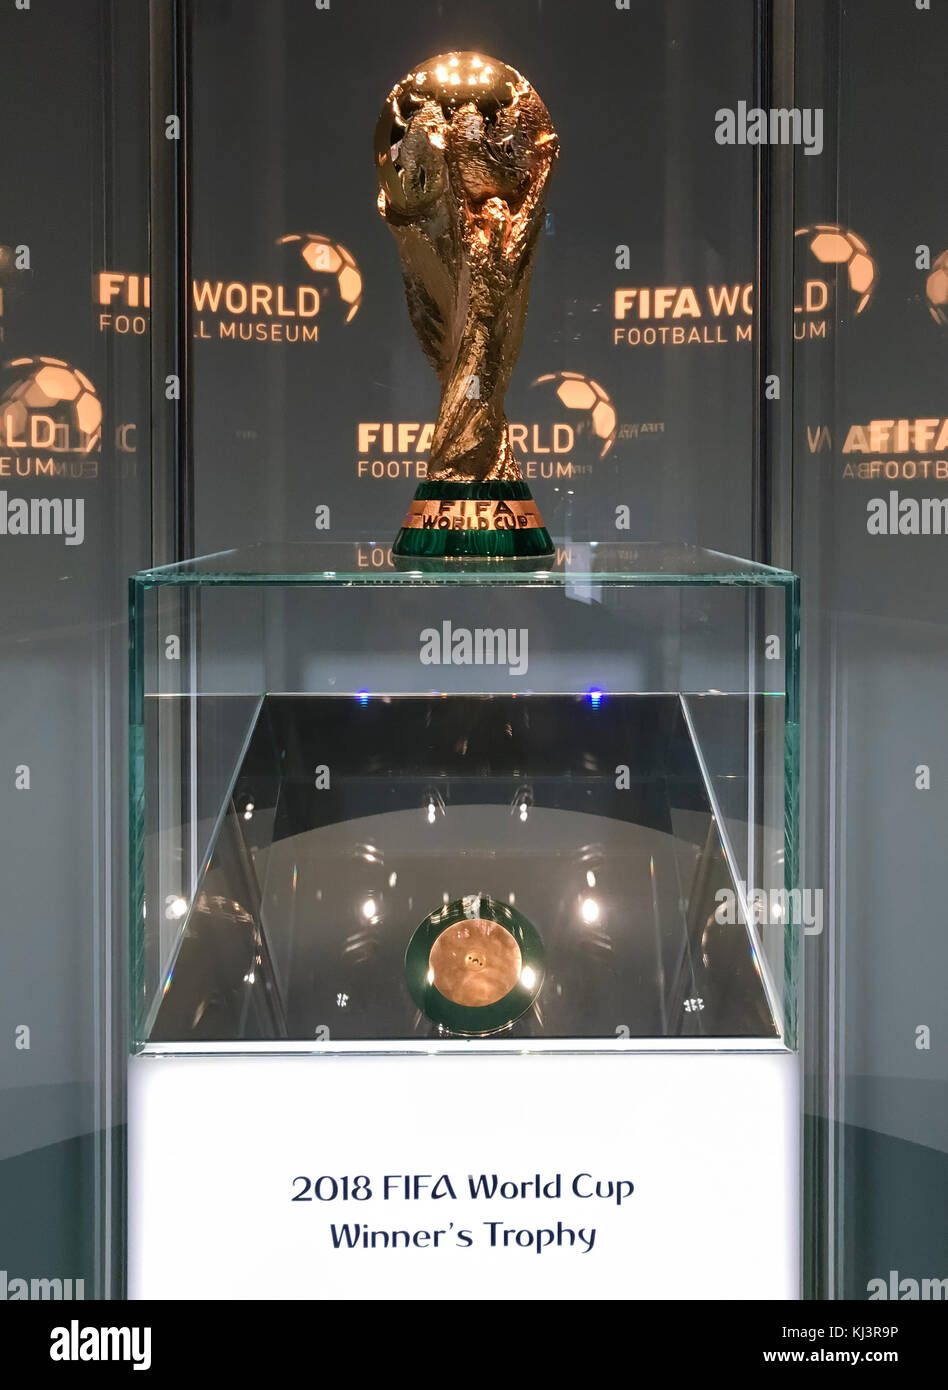 Zurich, Suisse - 12 Nov 2017 : Le trophée de la Coupe du Monde de la FIFA, exposé au musée du football mondial de la FIFA à Zurich, Suisse. Banque D'Images